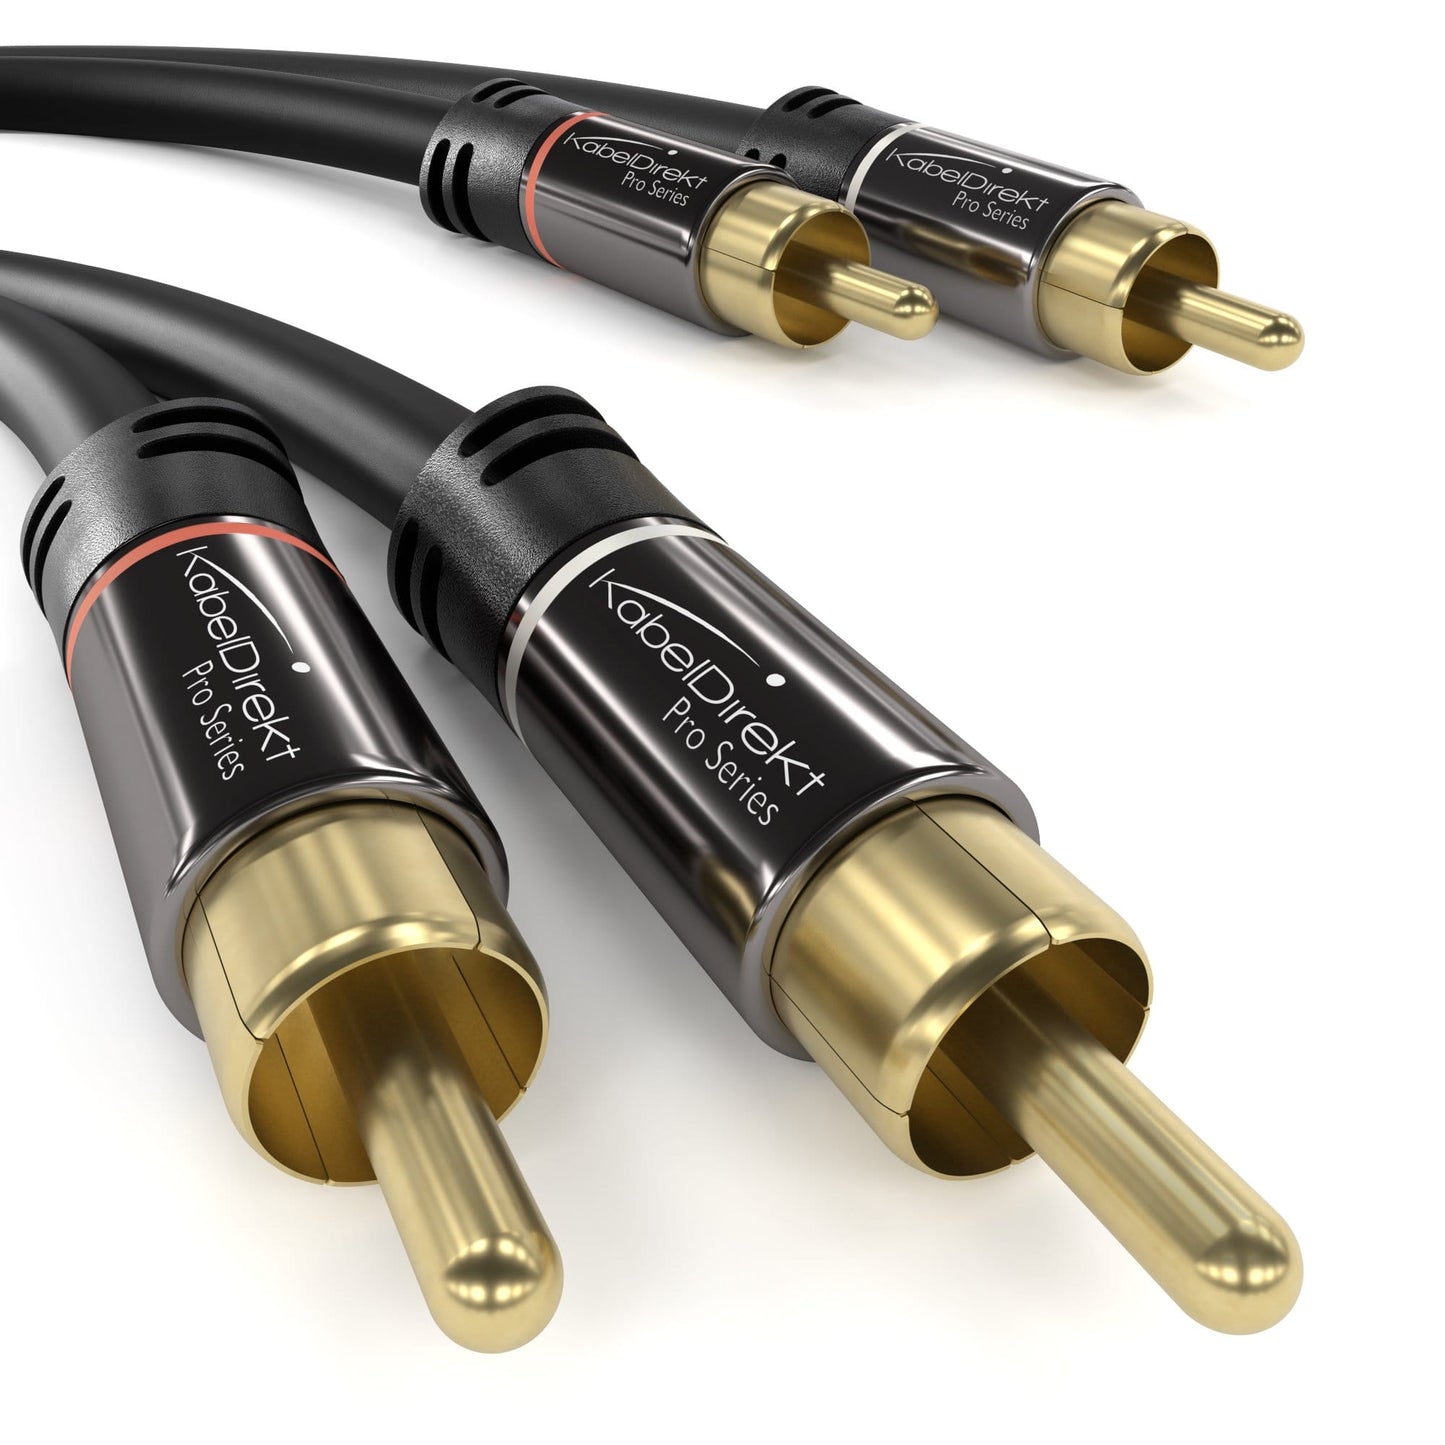 BestPlug câble Audio stéréo RCA l/r cinc cynch 7,5 m de câble RCA Cinch  cinckabel câble 2 x fiches RCA Rouge, Blanc, 2 x RCA mâle, 7,5 m (Rouge